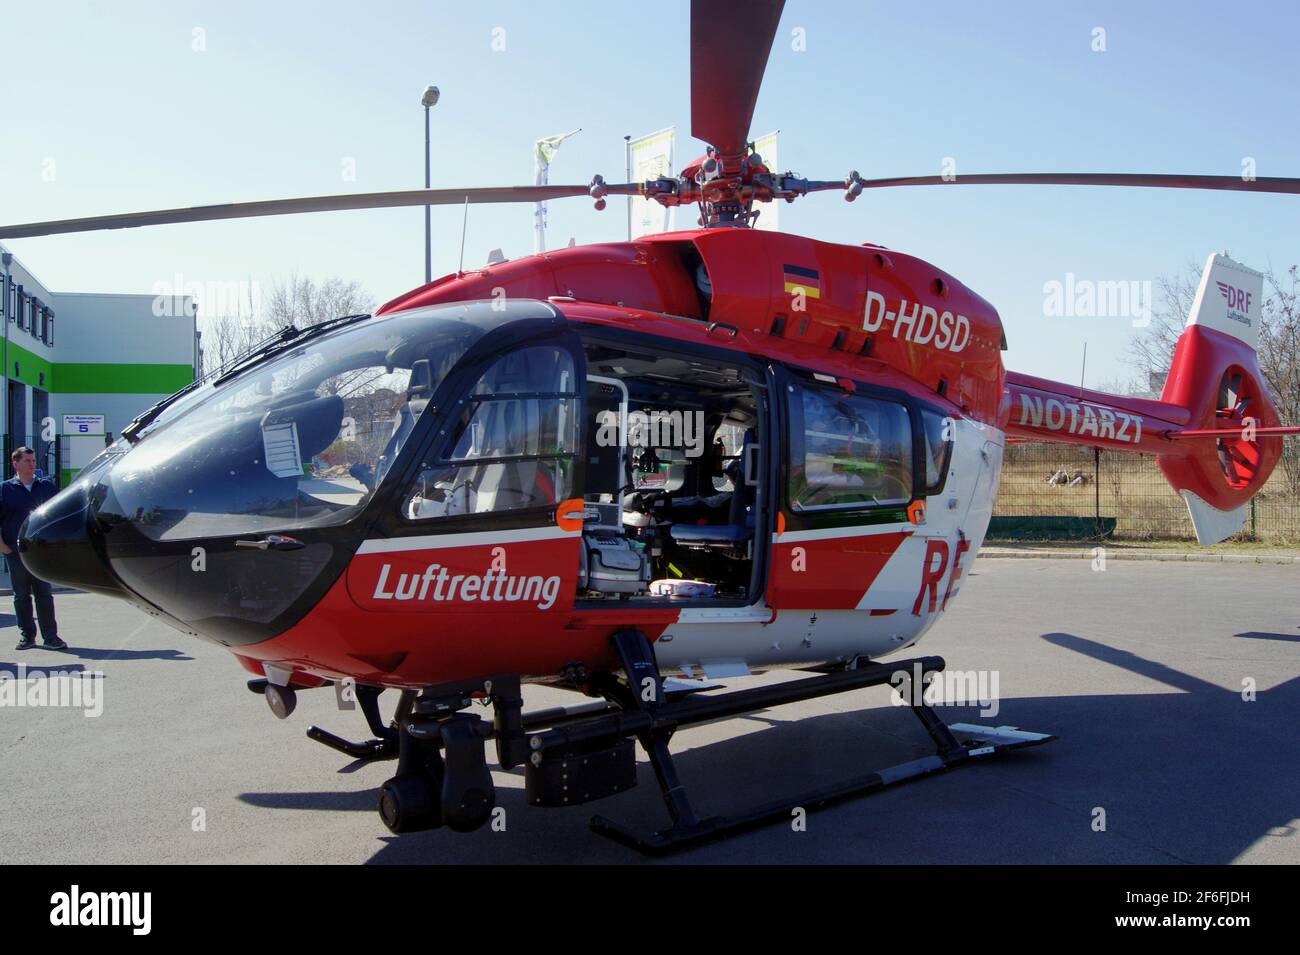 Der Hubschrauber Christoph Berlin D-HDSD, Airbus Helicopters H145, der Deutsche Rettungsflugwacht DRF am 31 März 2021 in Berlin-Spandau Stock Photo